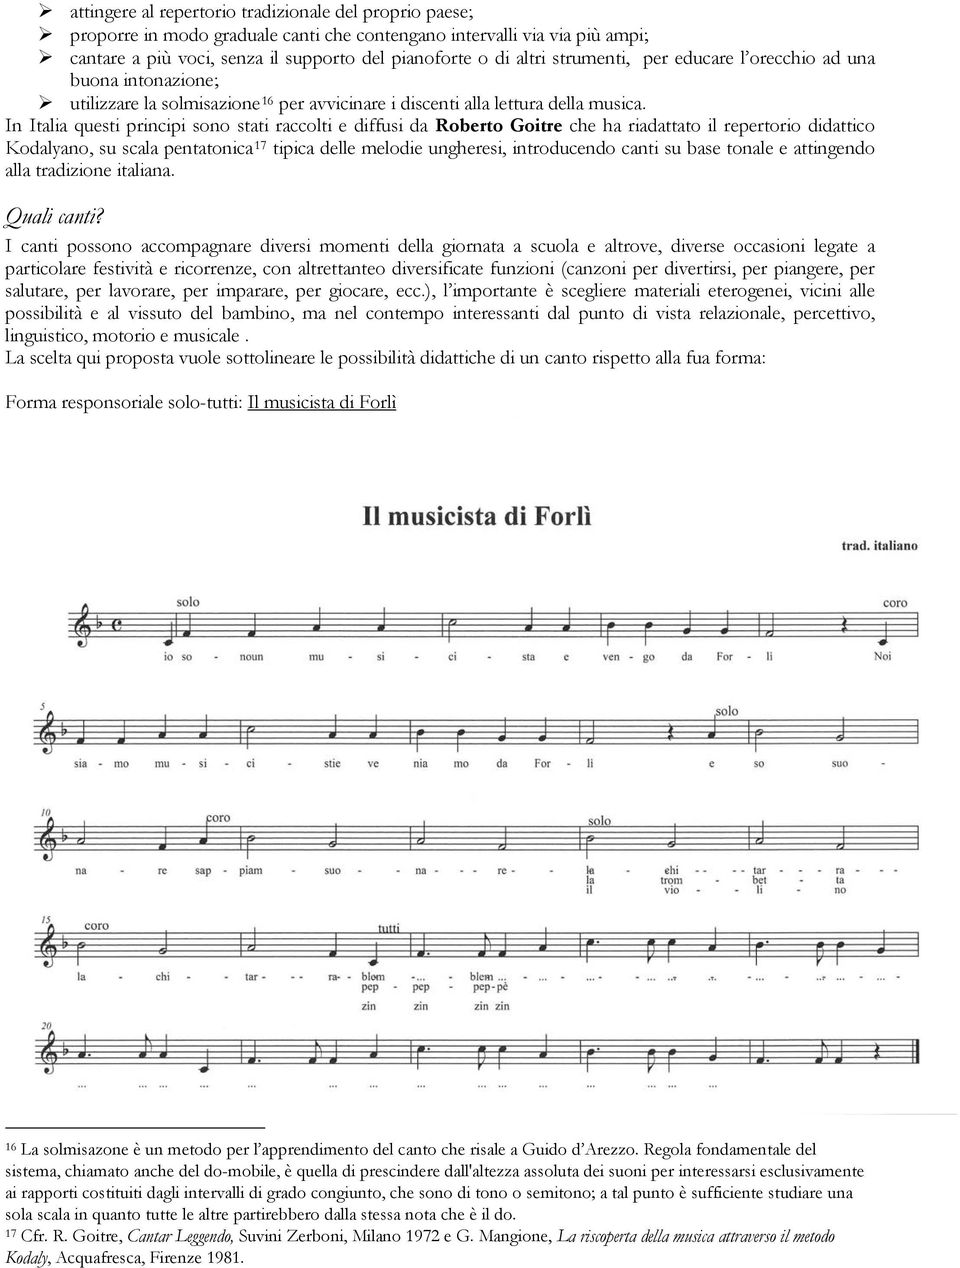 In Italia questi principi sono stati raccolti e diffusi da Roberto Goitre che ha riadattato il repertorio didattico Kodalyano, su scala pentatonica 17 tipica delle melodie ungheresi, introducendo